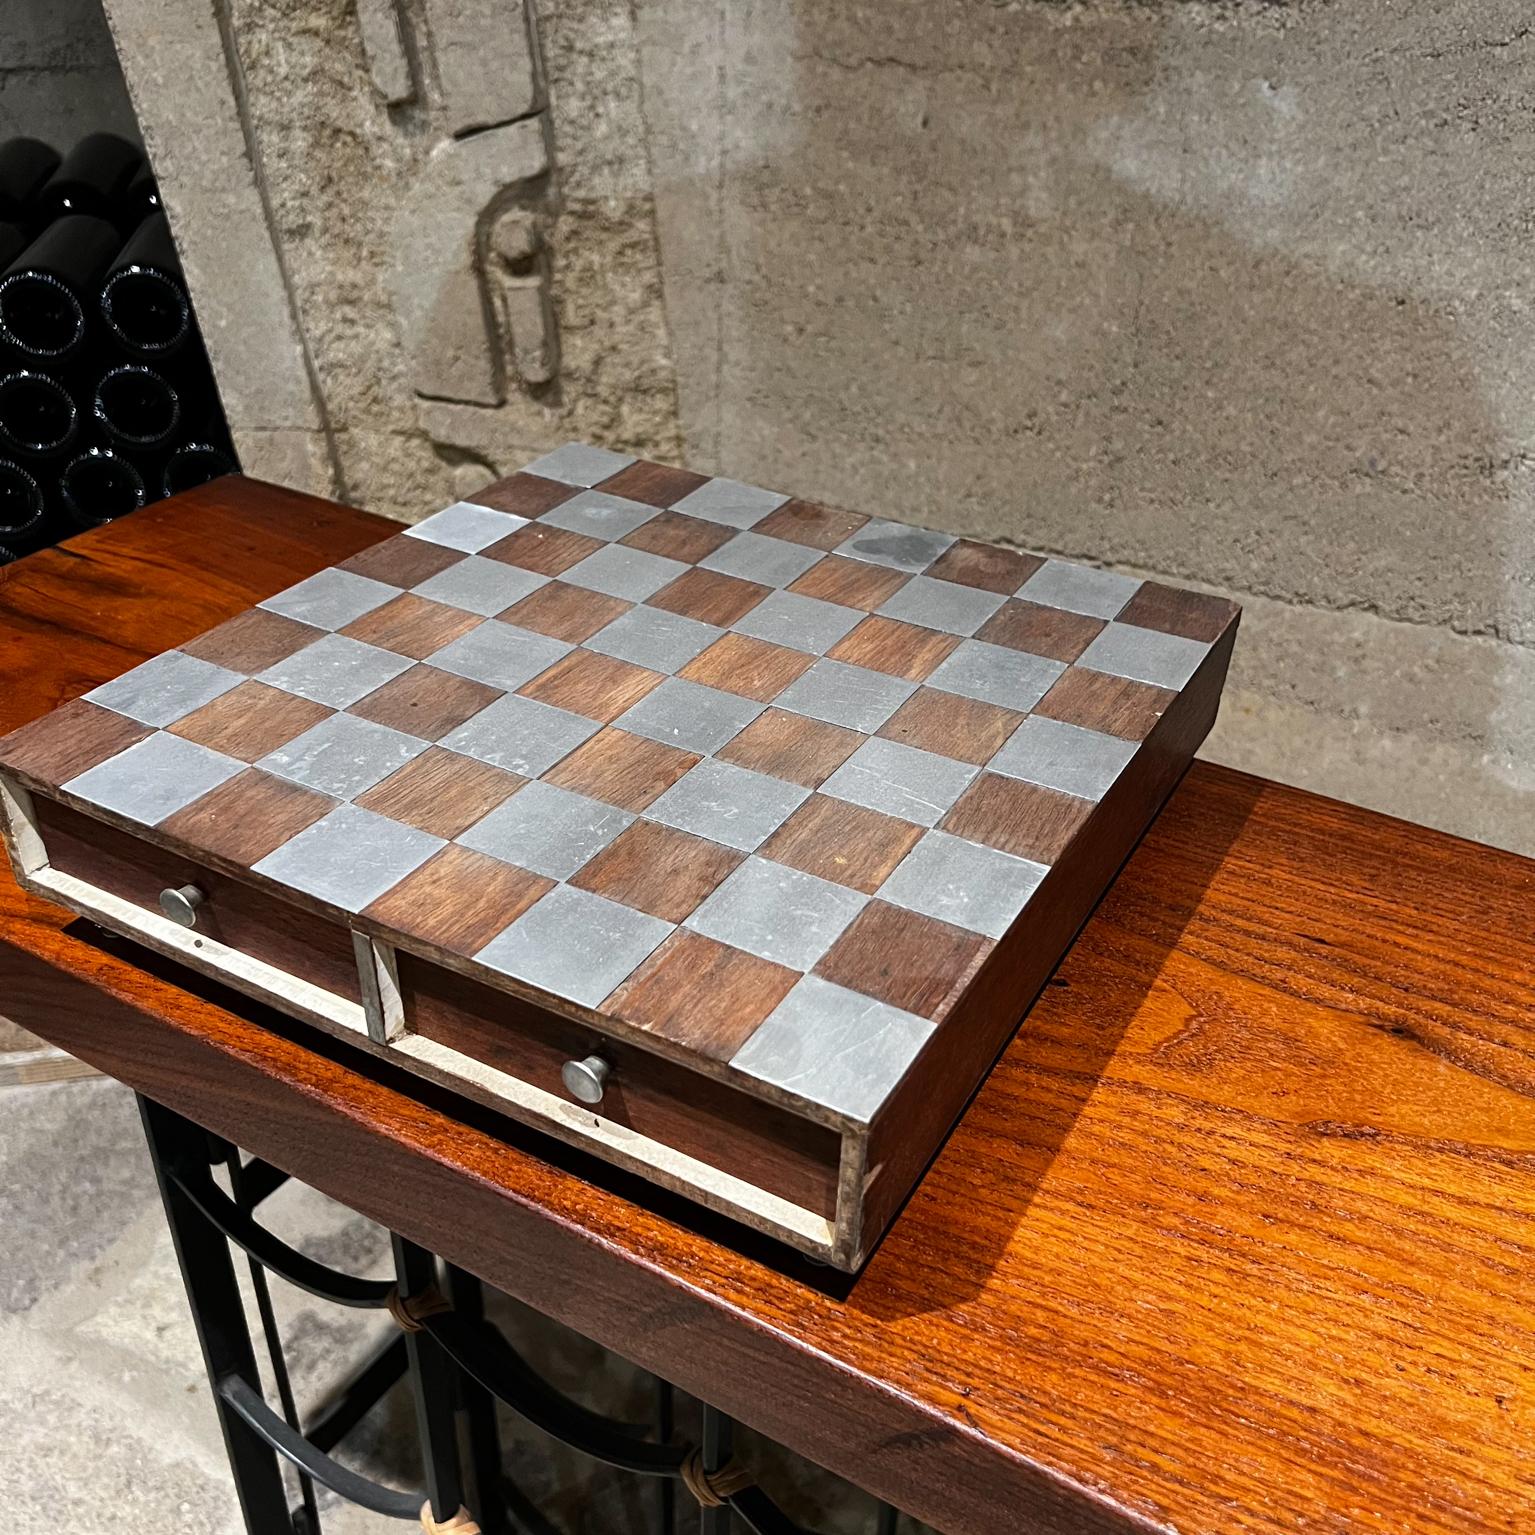 Jeu d'échecs moderne des années 1960 en aluminium et bois de noyer 
Non marqué
État vintage d'occasion. Certaines pièces ont été restaurées. 
Veuillez vous référer à toutes les images.
Mesures : 3 haut x 12 x 12.25.